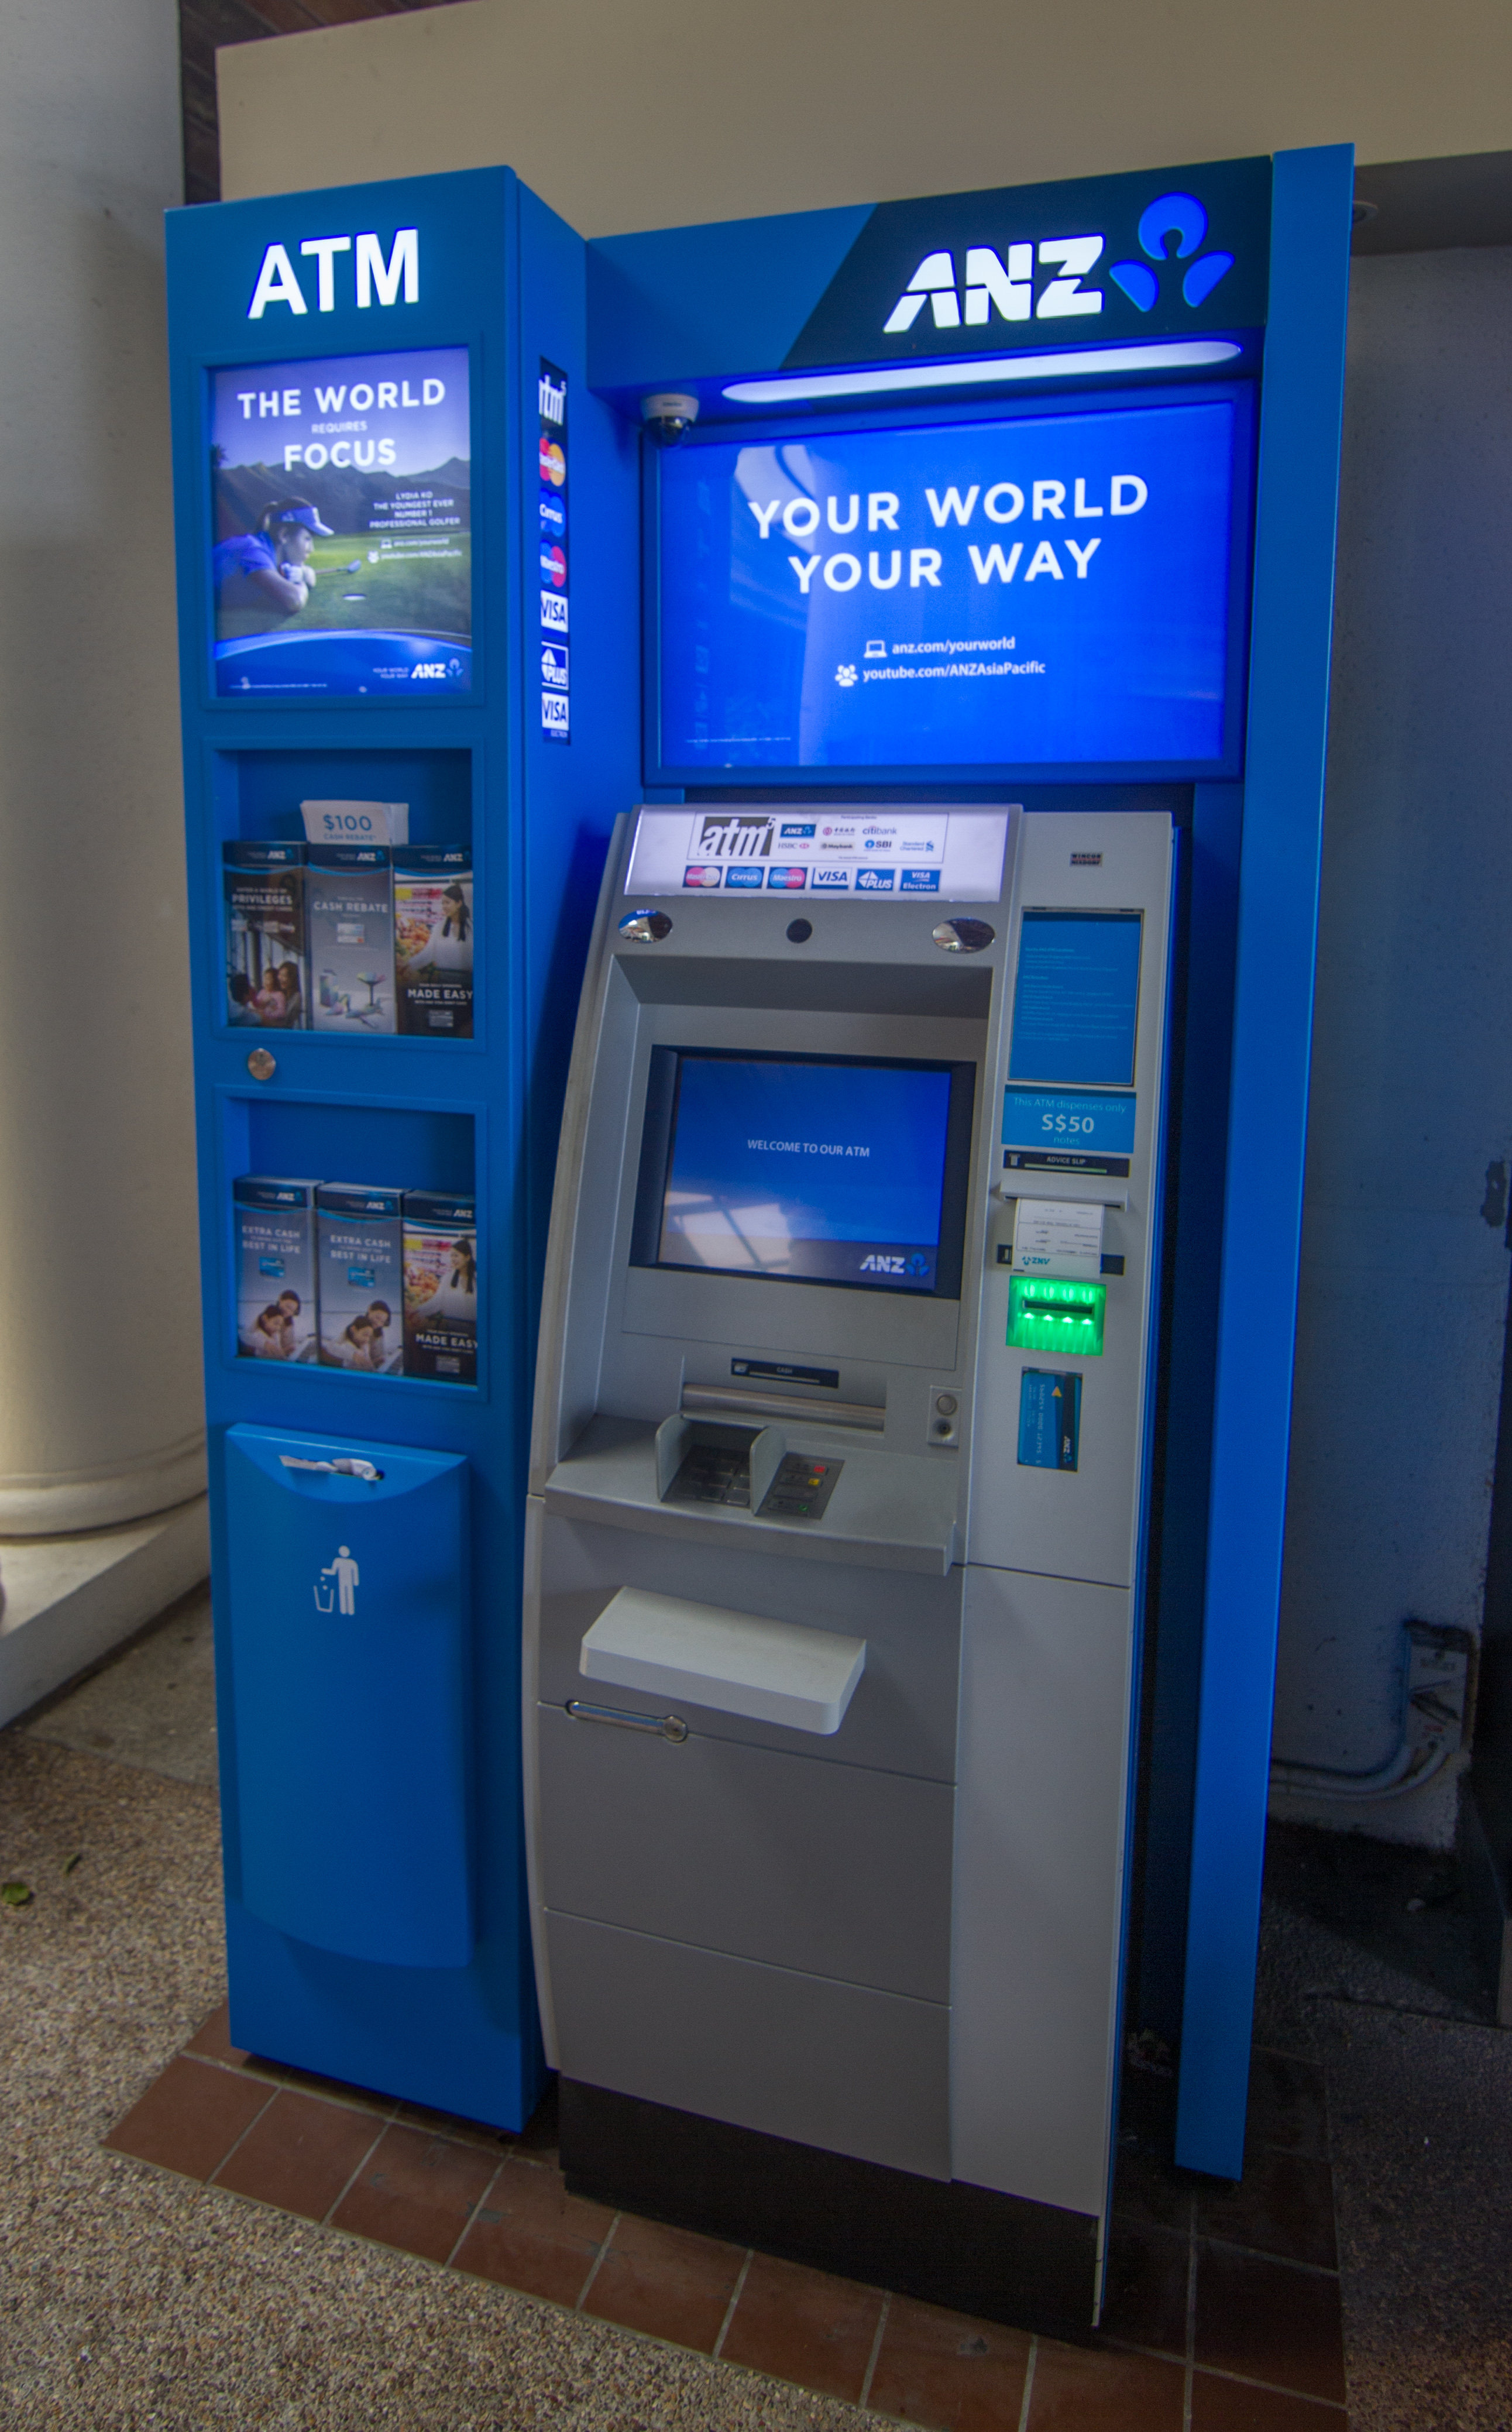 1. Giới thiệu Hướng dẫn Rút tiền ATM